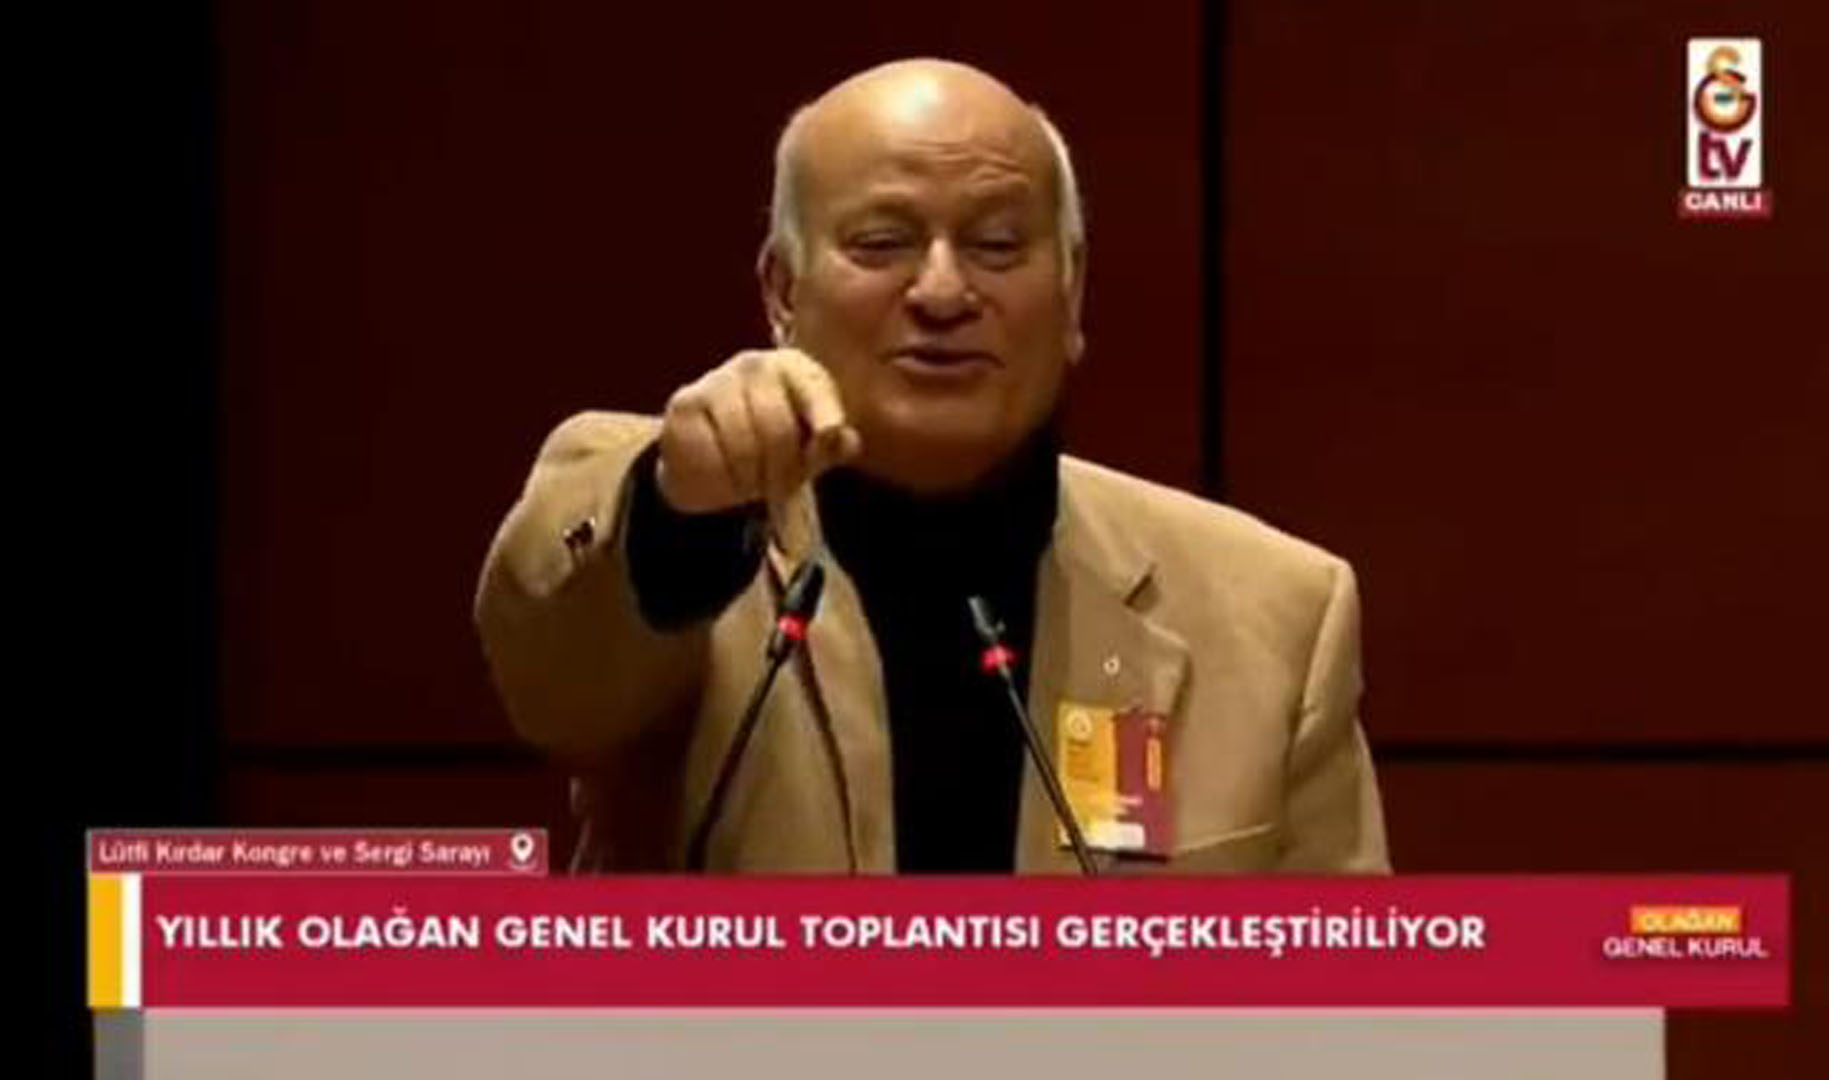 Dursun Özbek ölmeden mezara koydular! Galatasaray Genel Kurulu'nda o anlar şaşkınlık yarattı!